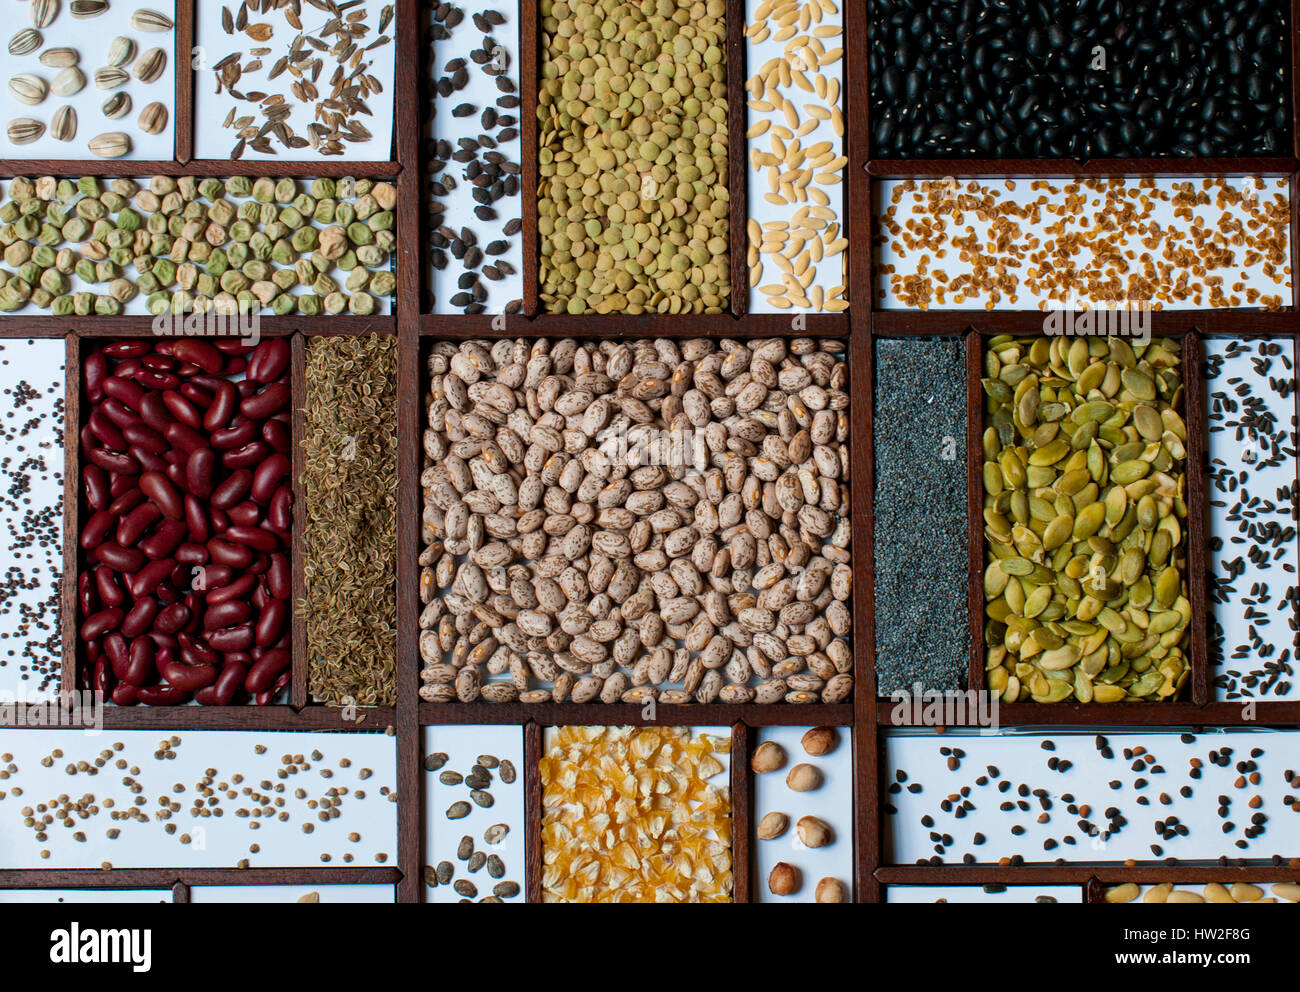 Visualizzazione dei semi secchi, fagioli, mais, per colture commestibili o stagionatura Foto Stock